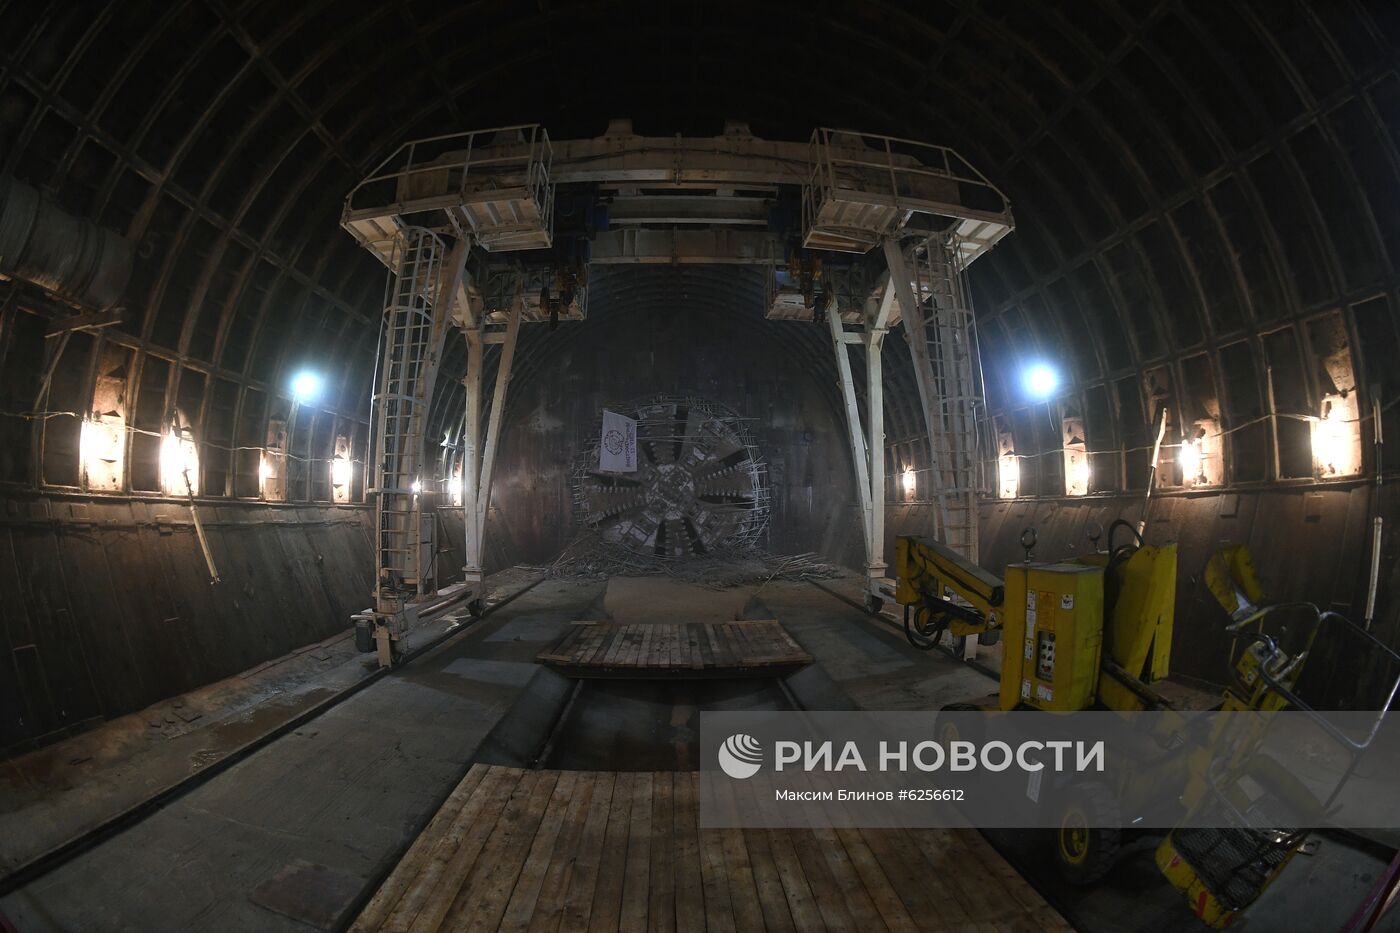 Завершение проходки тоннеля до станции БКЛ  "Савеловская" 